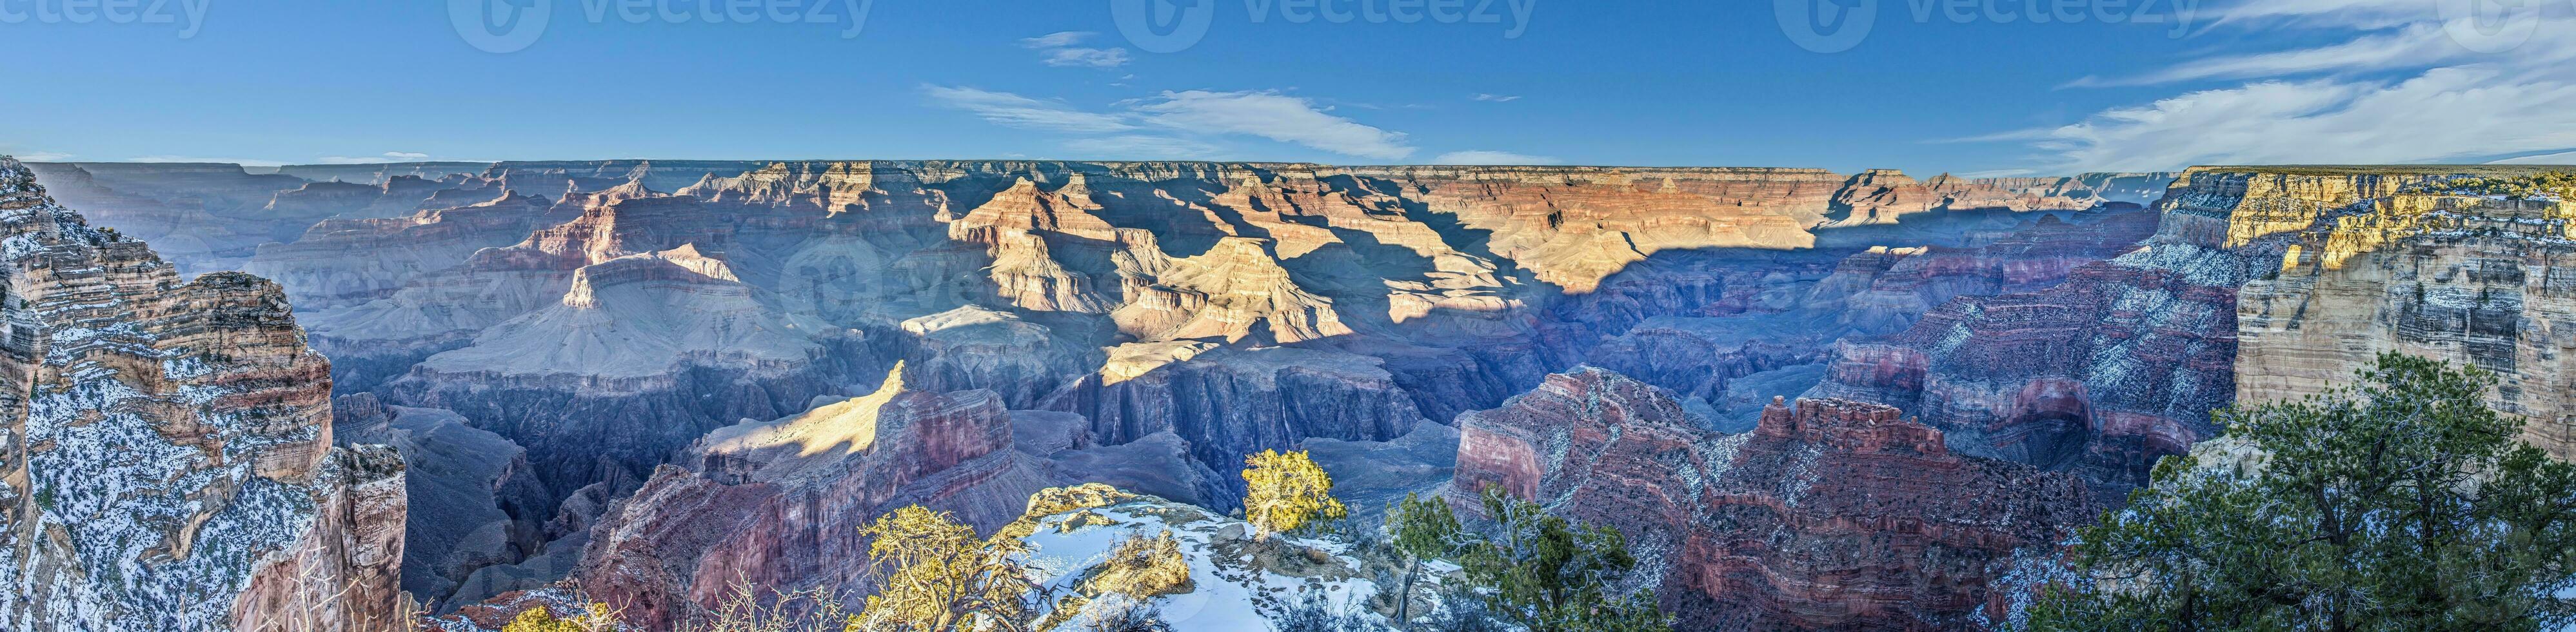 panorama immagine al di sopra di mille dollari canyon con blu cielo nel Arizona foto